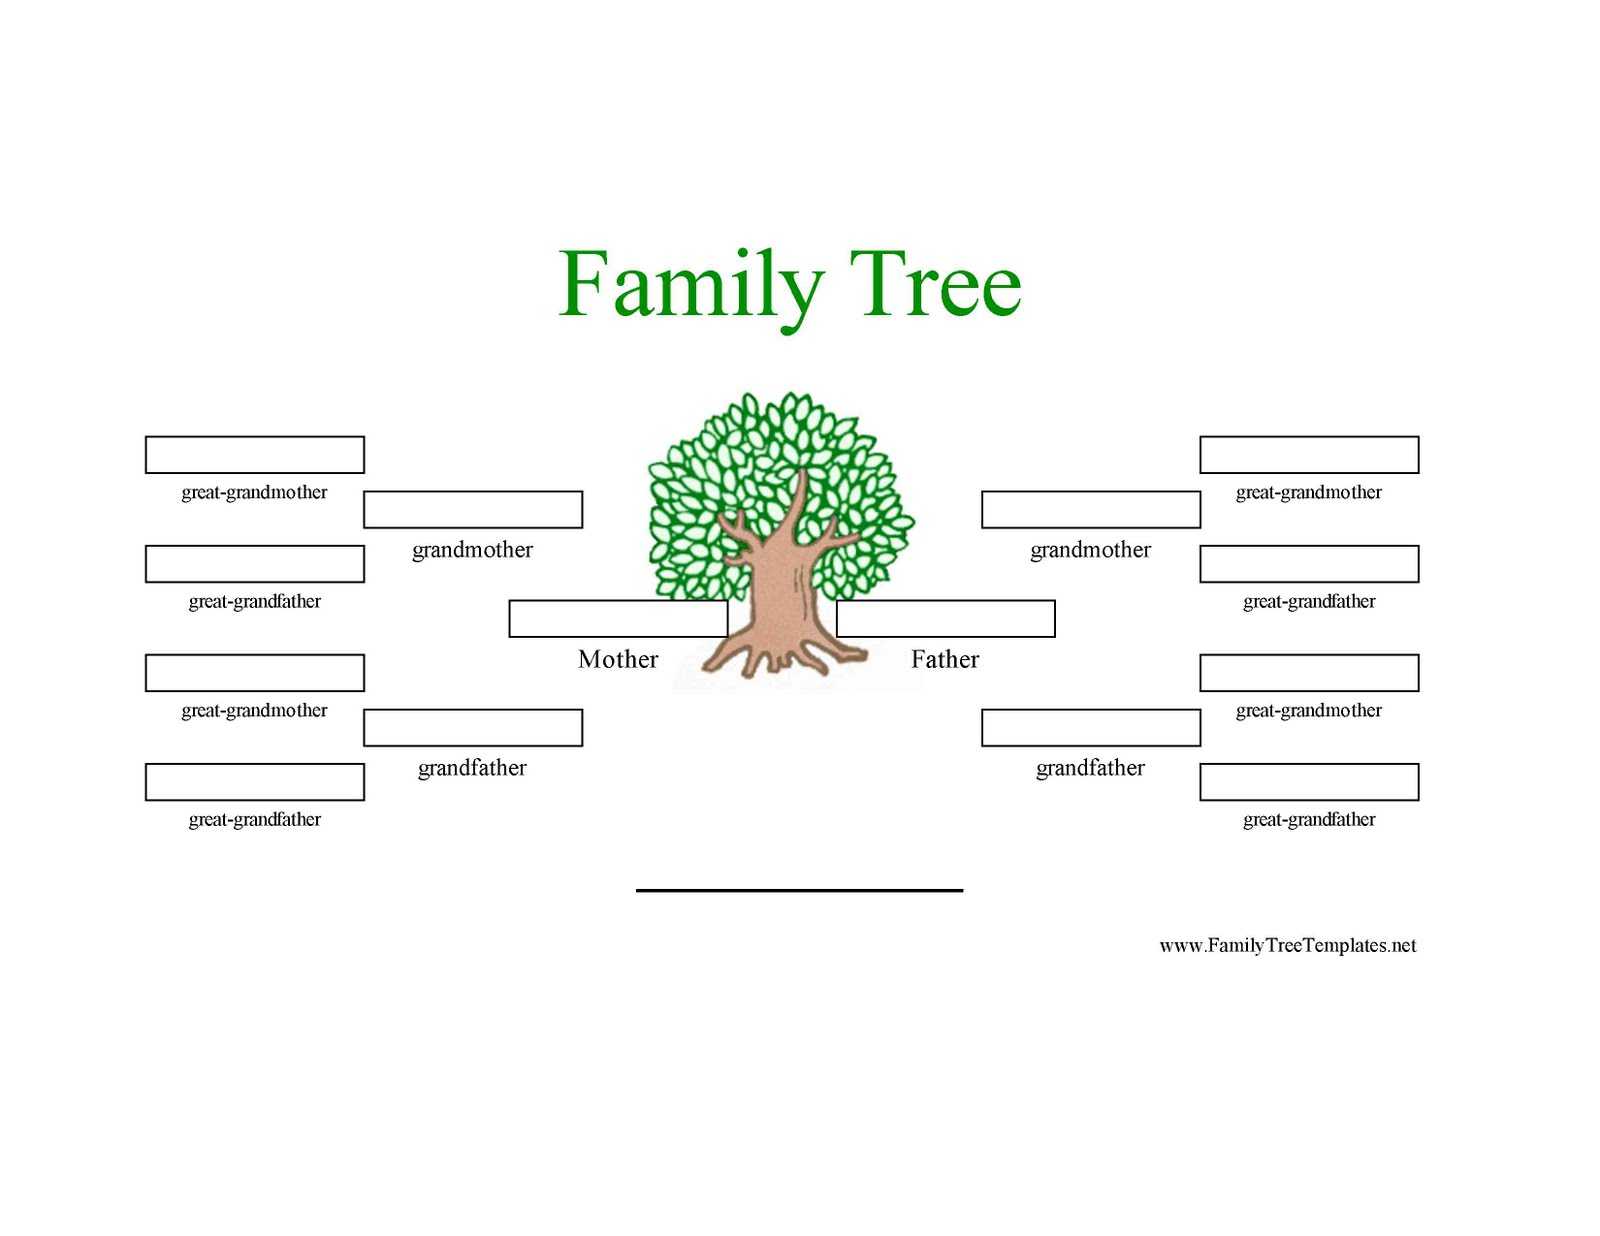 Family Tree Template: Family Tree Template Three Generation Inside Blank Family Tree Template 3 Generations